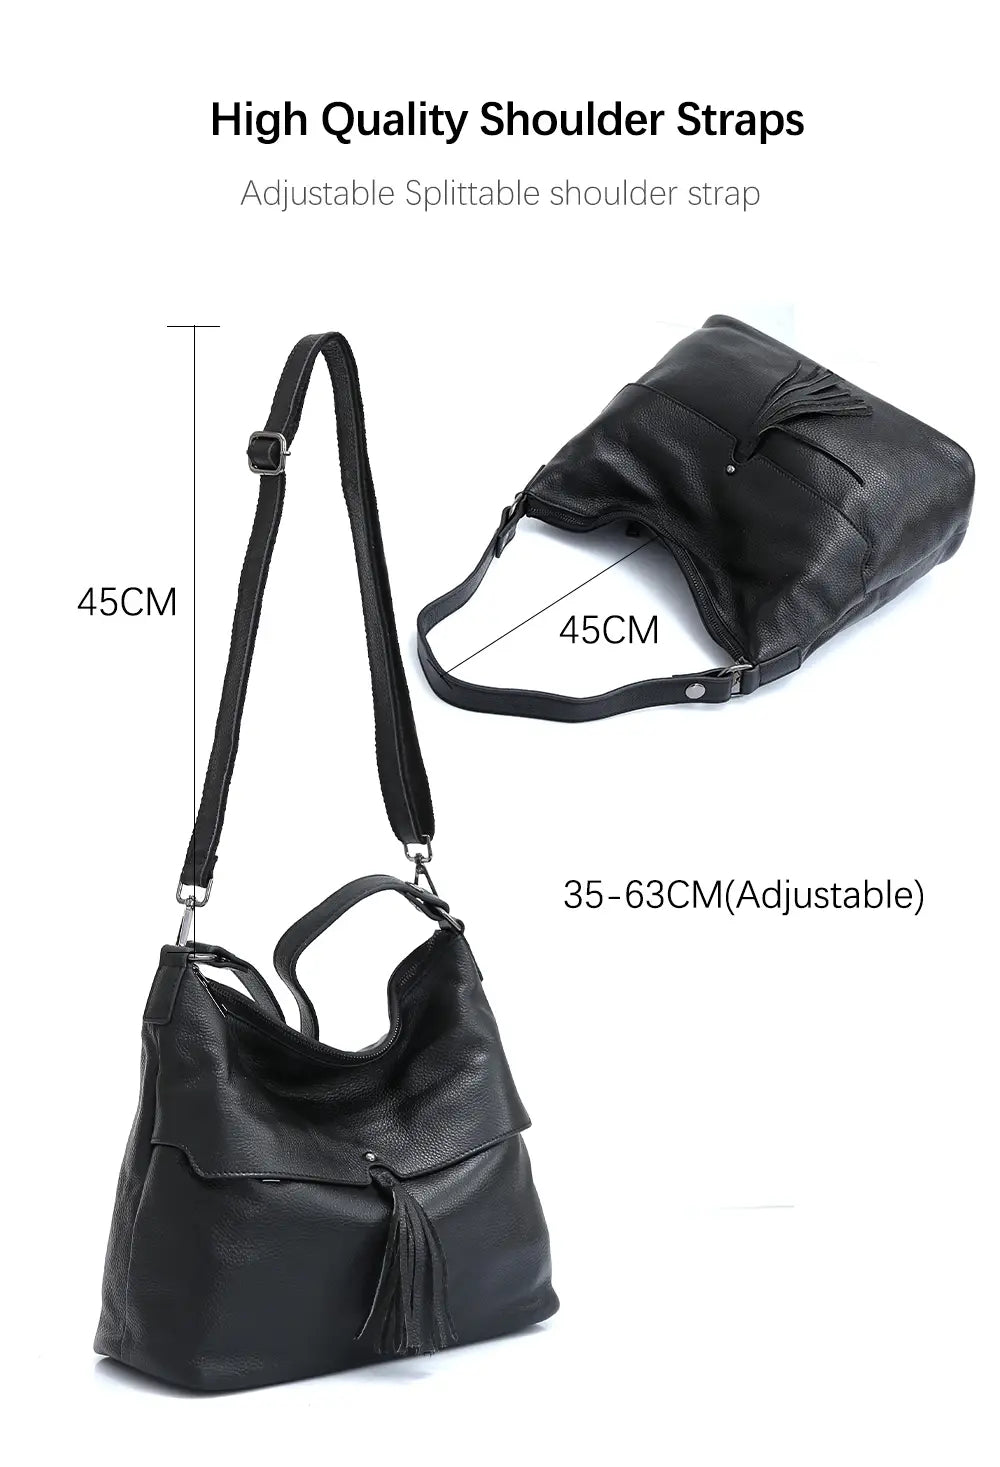 Versatile Genuine Leather Shoulder Bag in Five Stylish